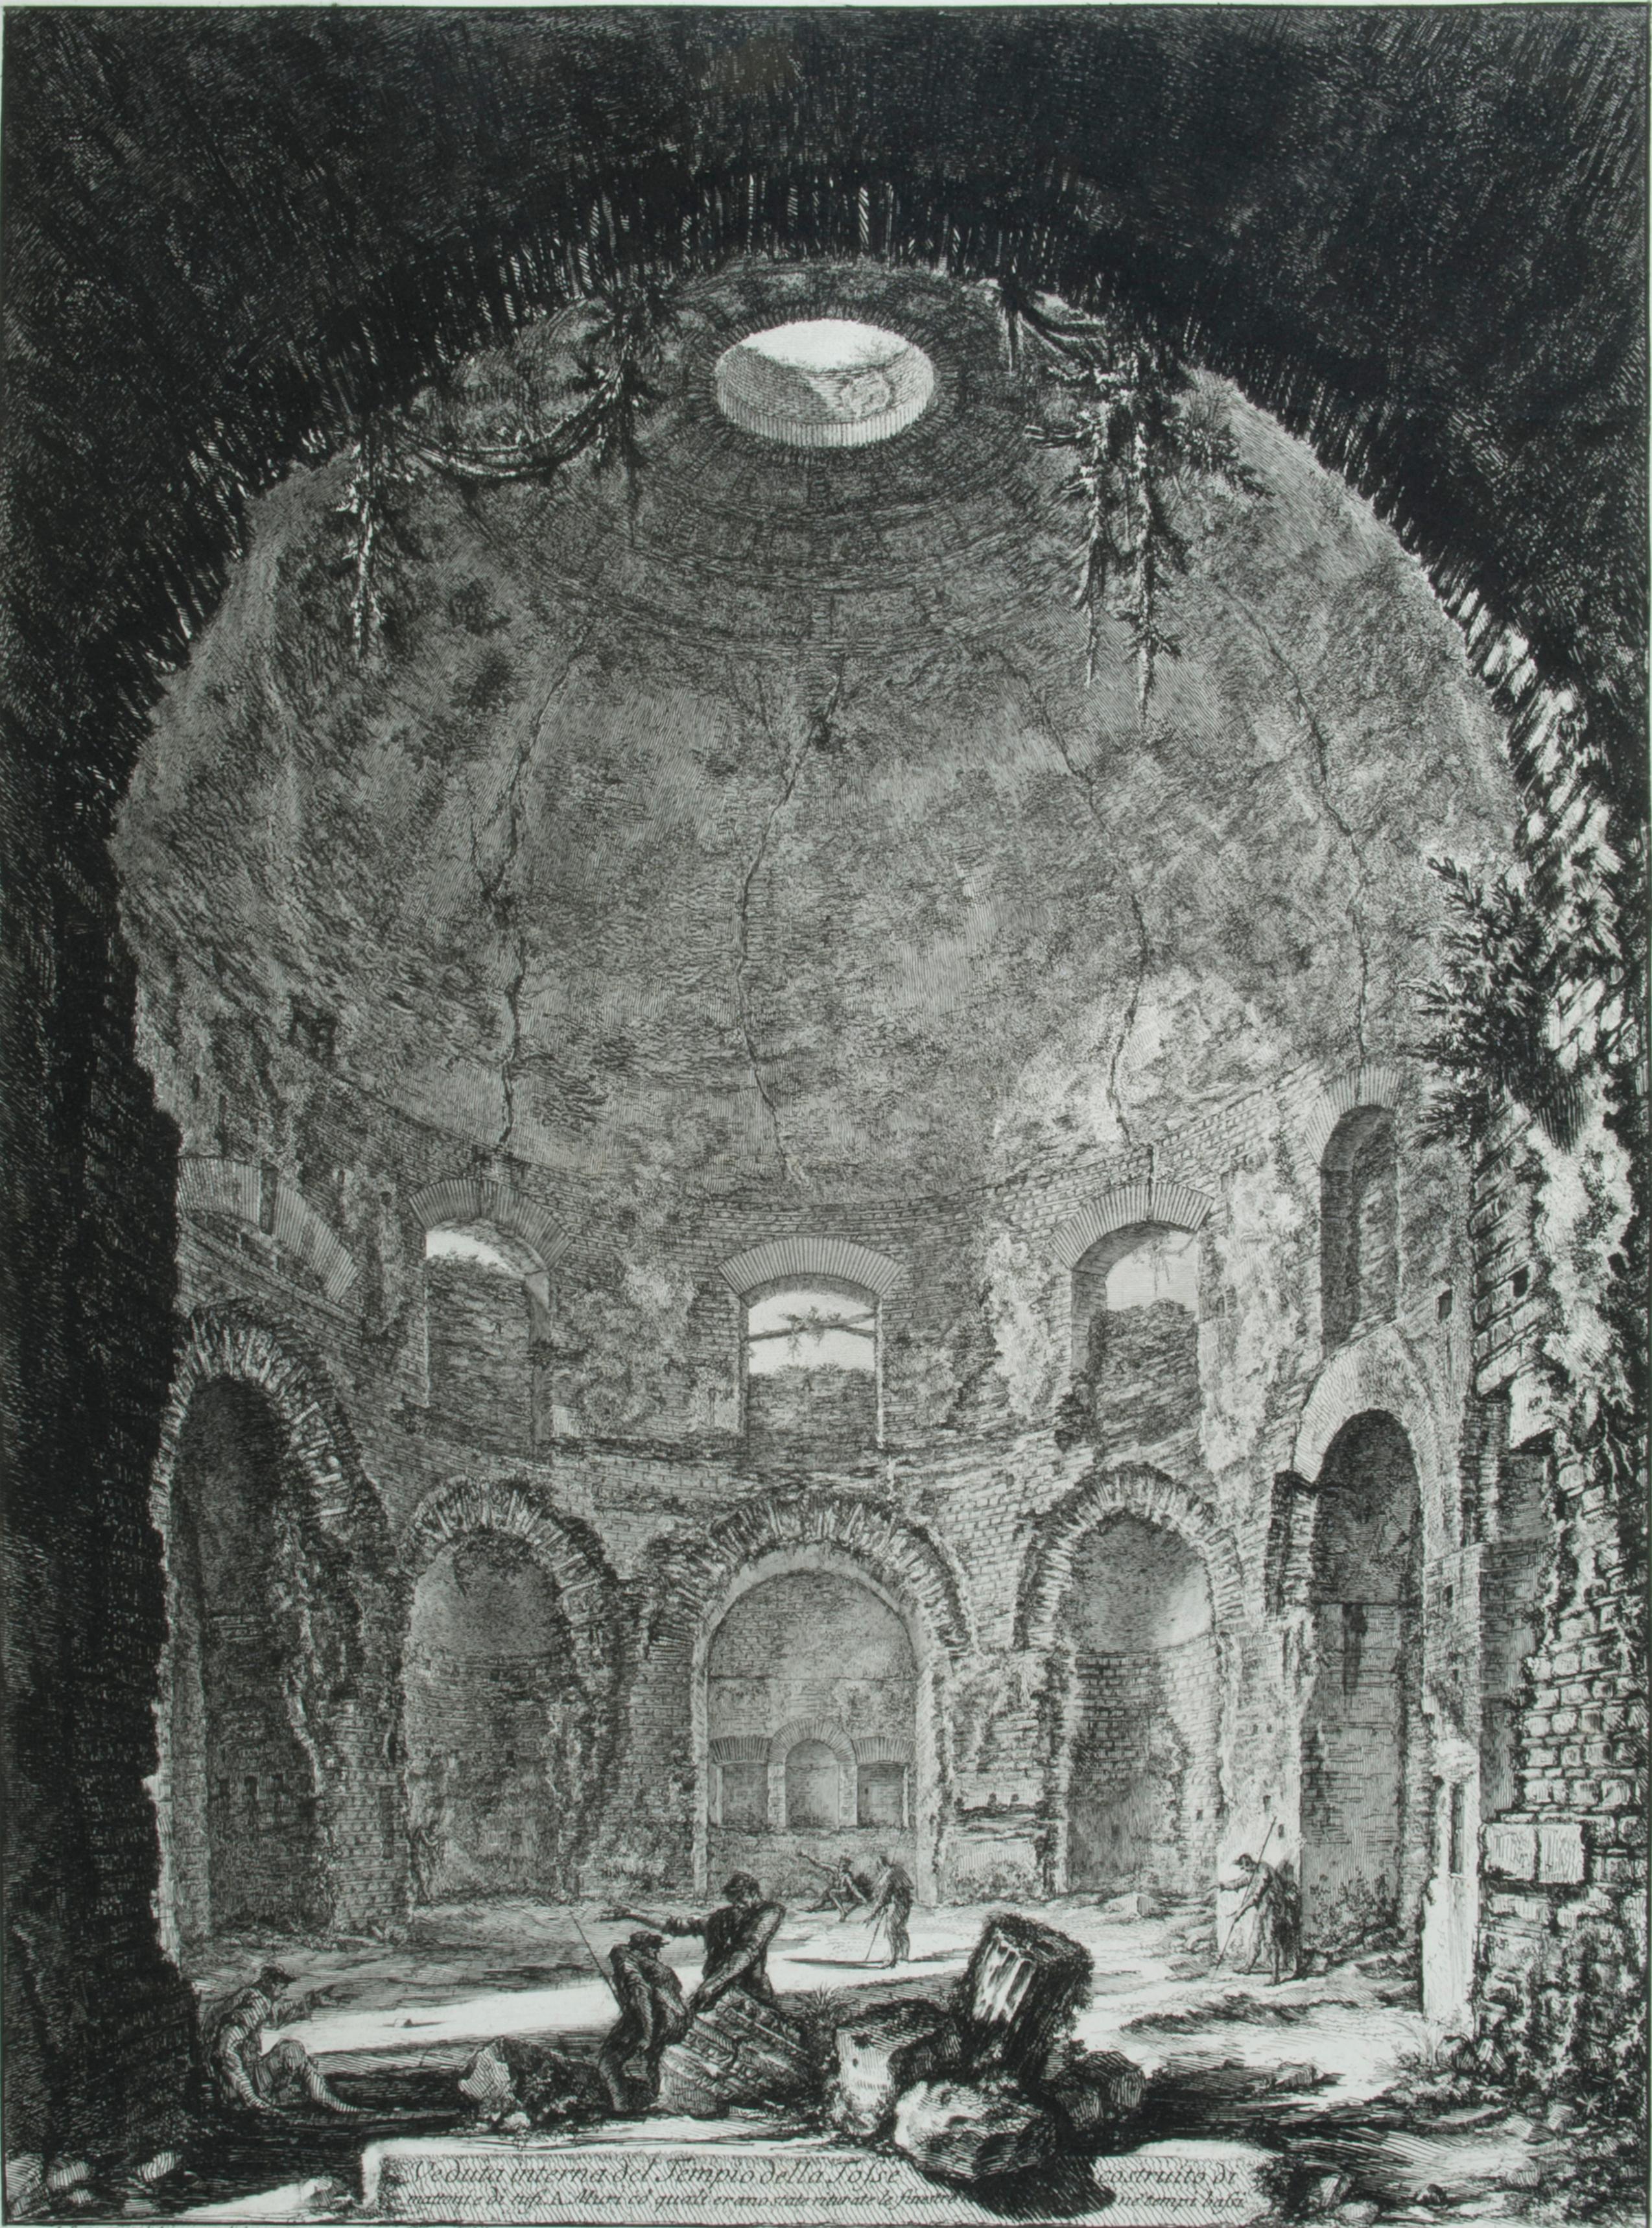 The So-Called Tempio della Tosse, près de Tivoli. Intérieur droit                 